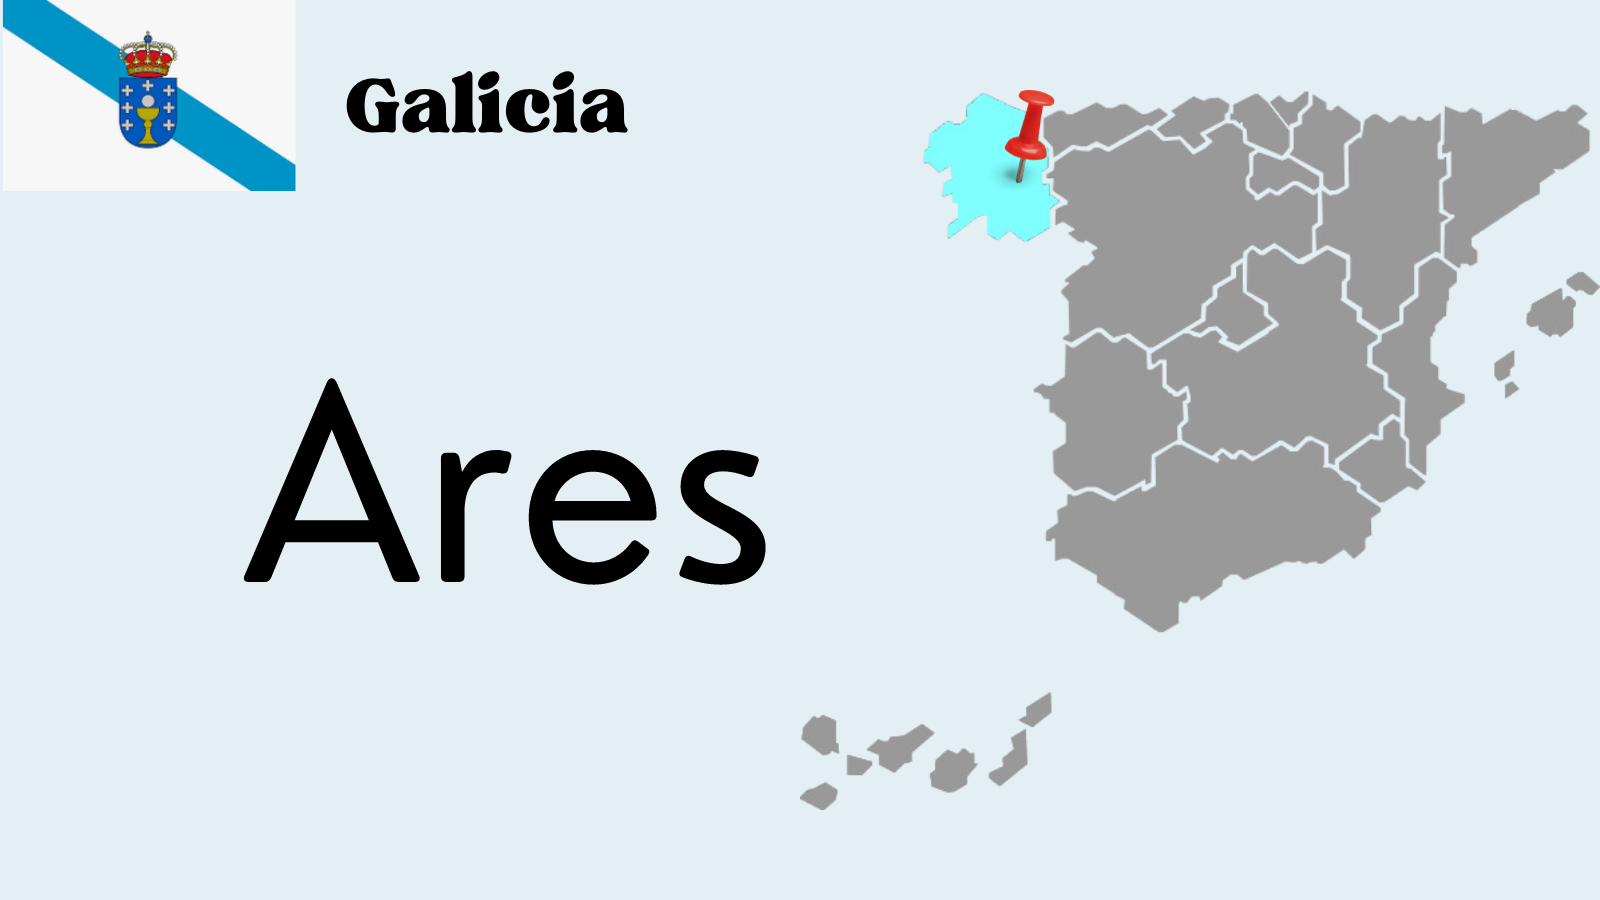 Explorando el municipio de Ares: la historia y los atractivos de esta localidad gallega